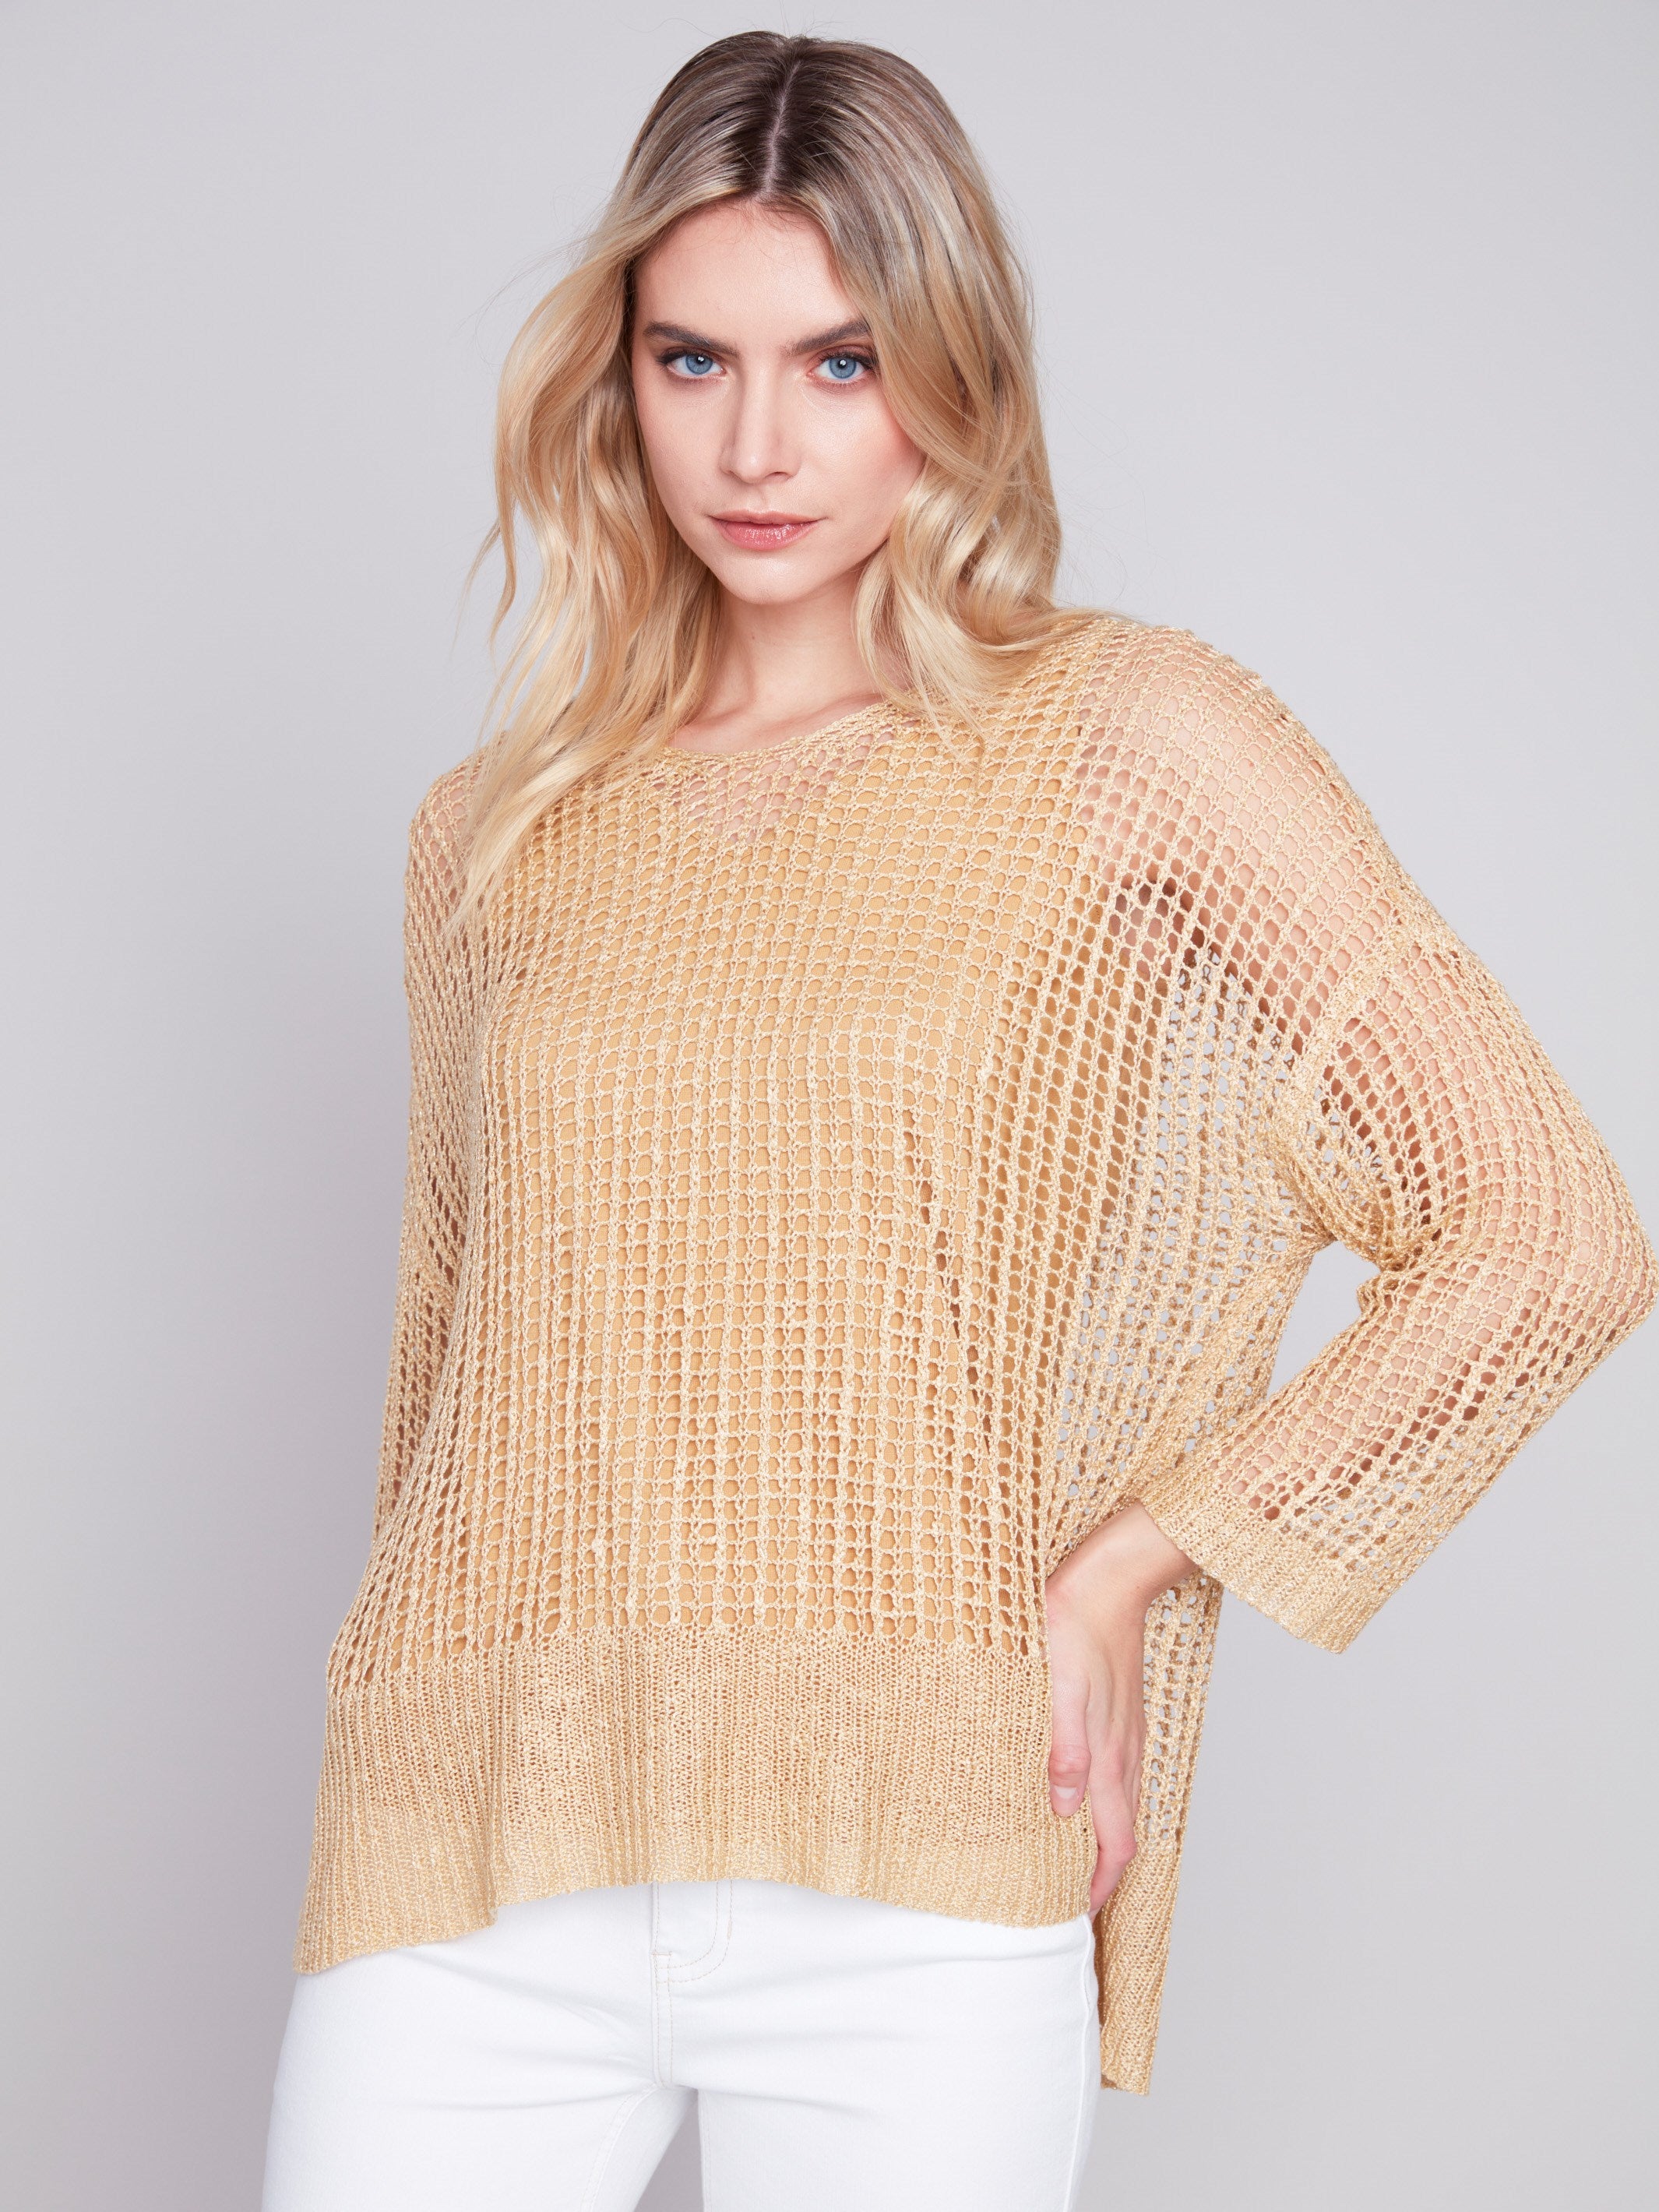 Charlie B Fishnet Crochet Sweater - Gold - Image 5